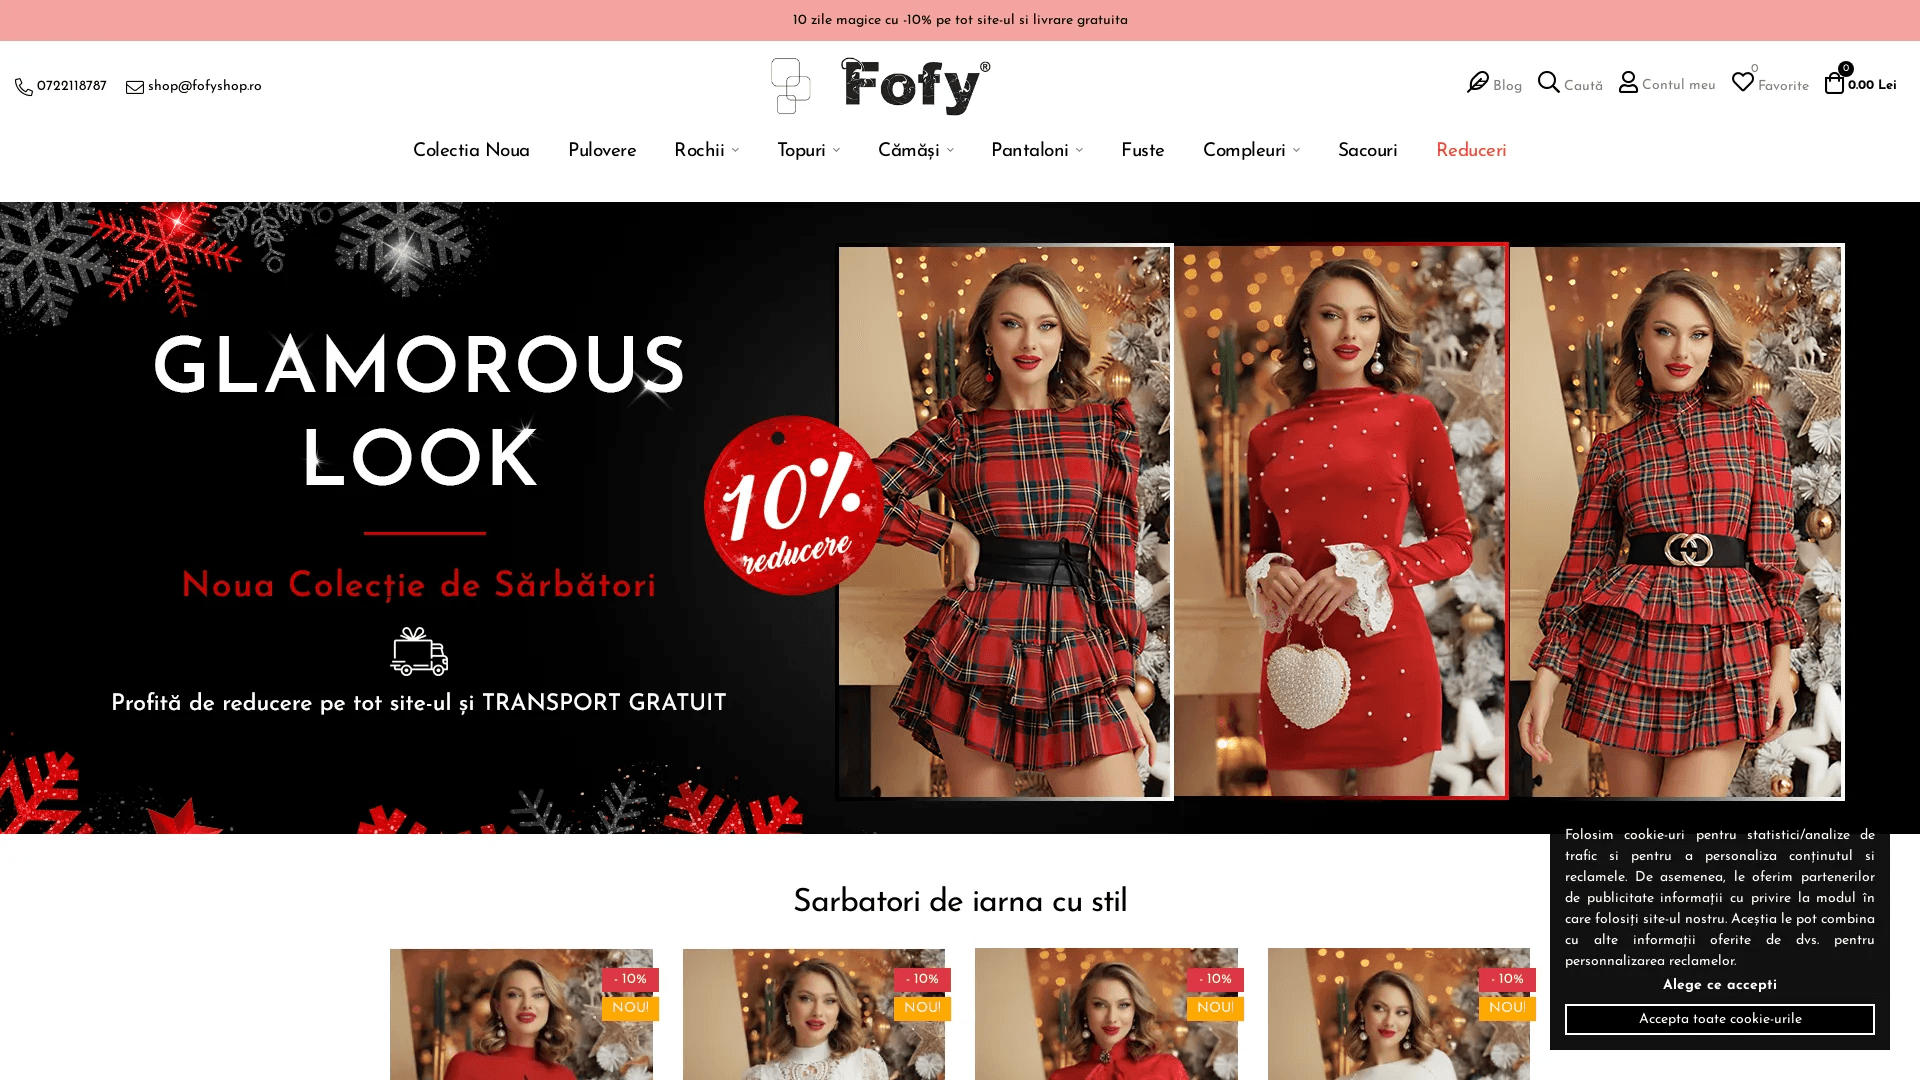 Fofy.ro